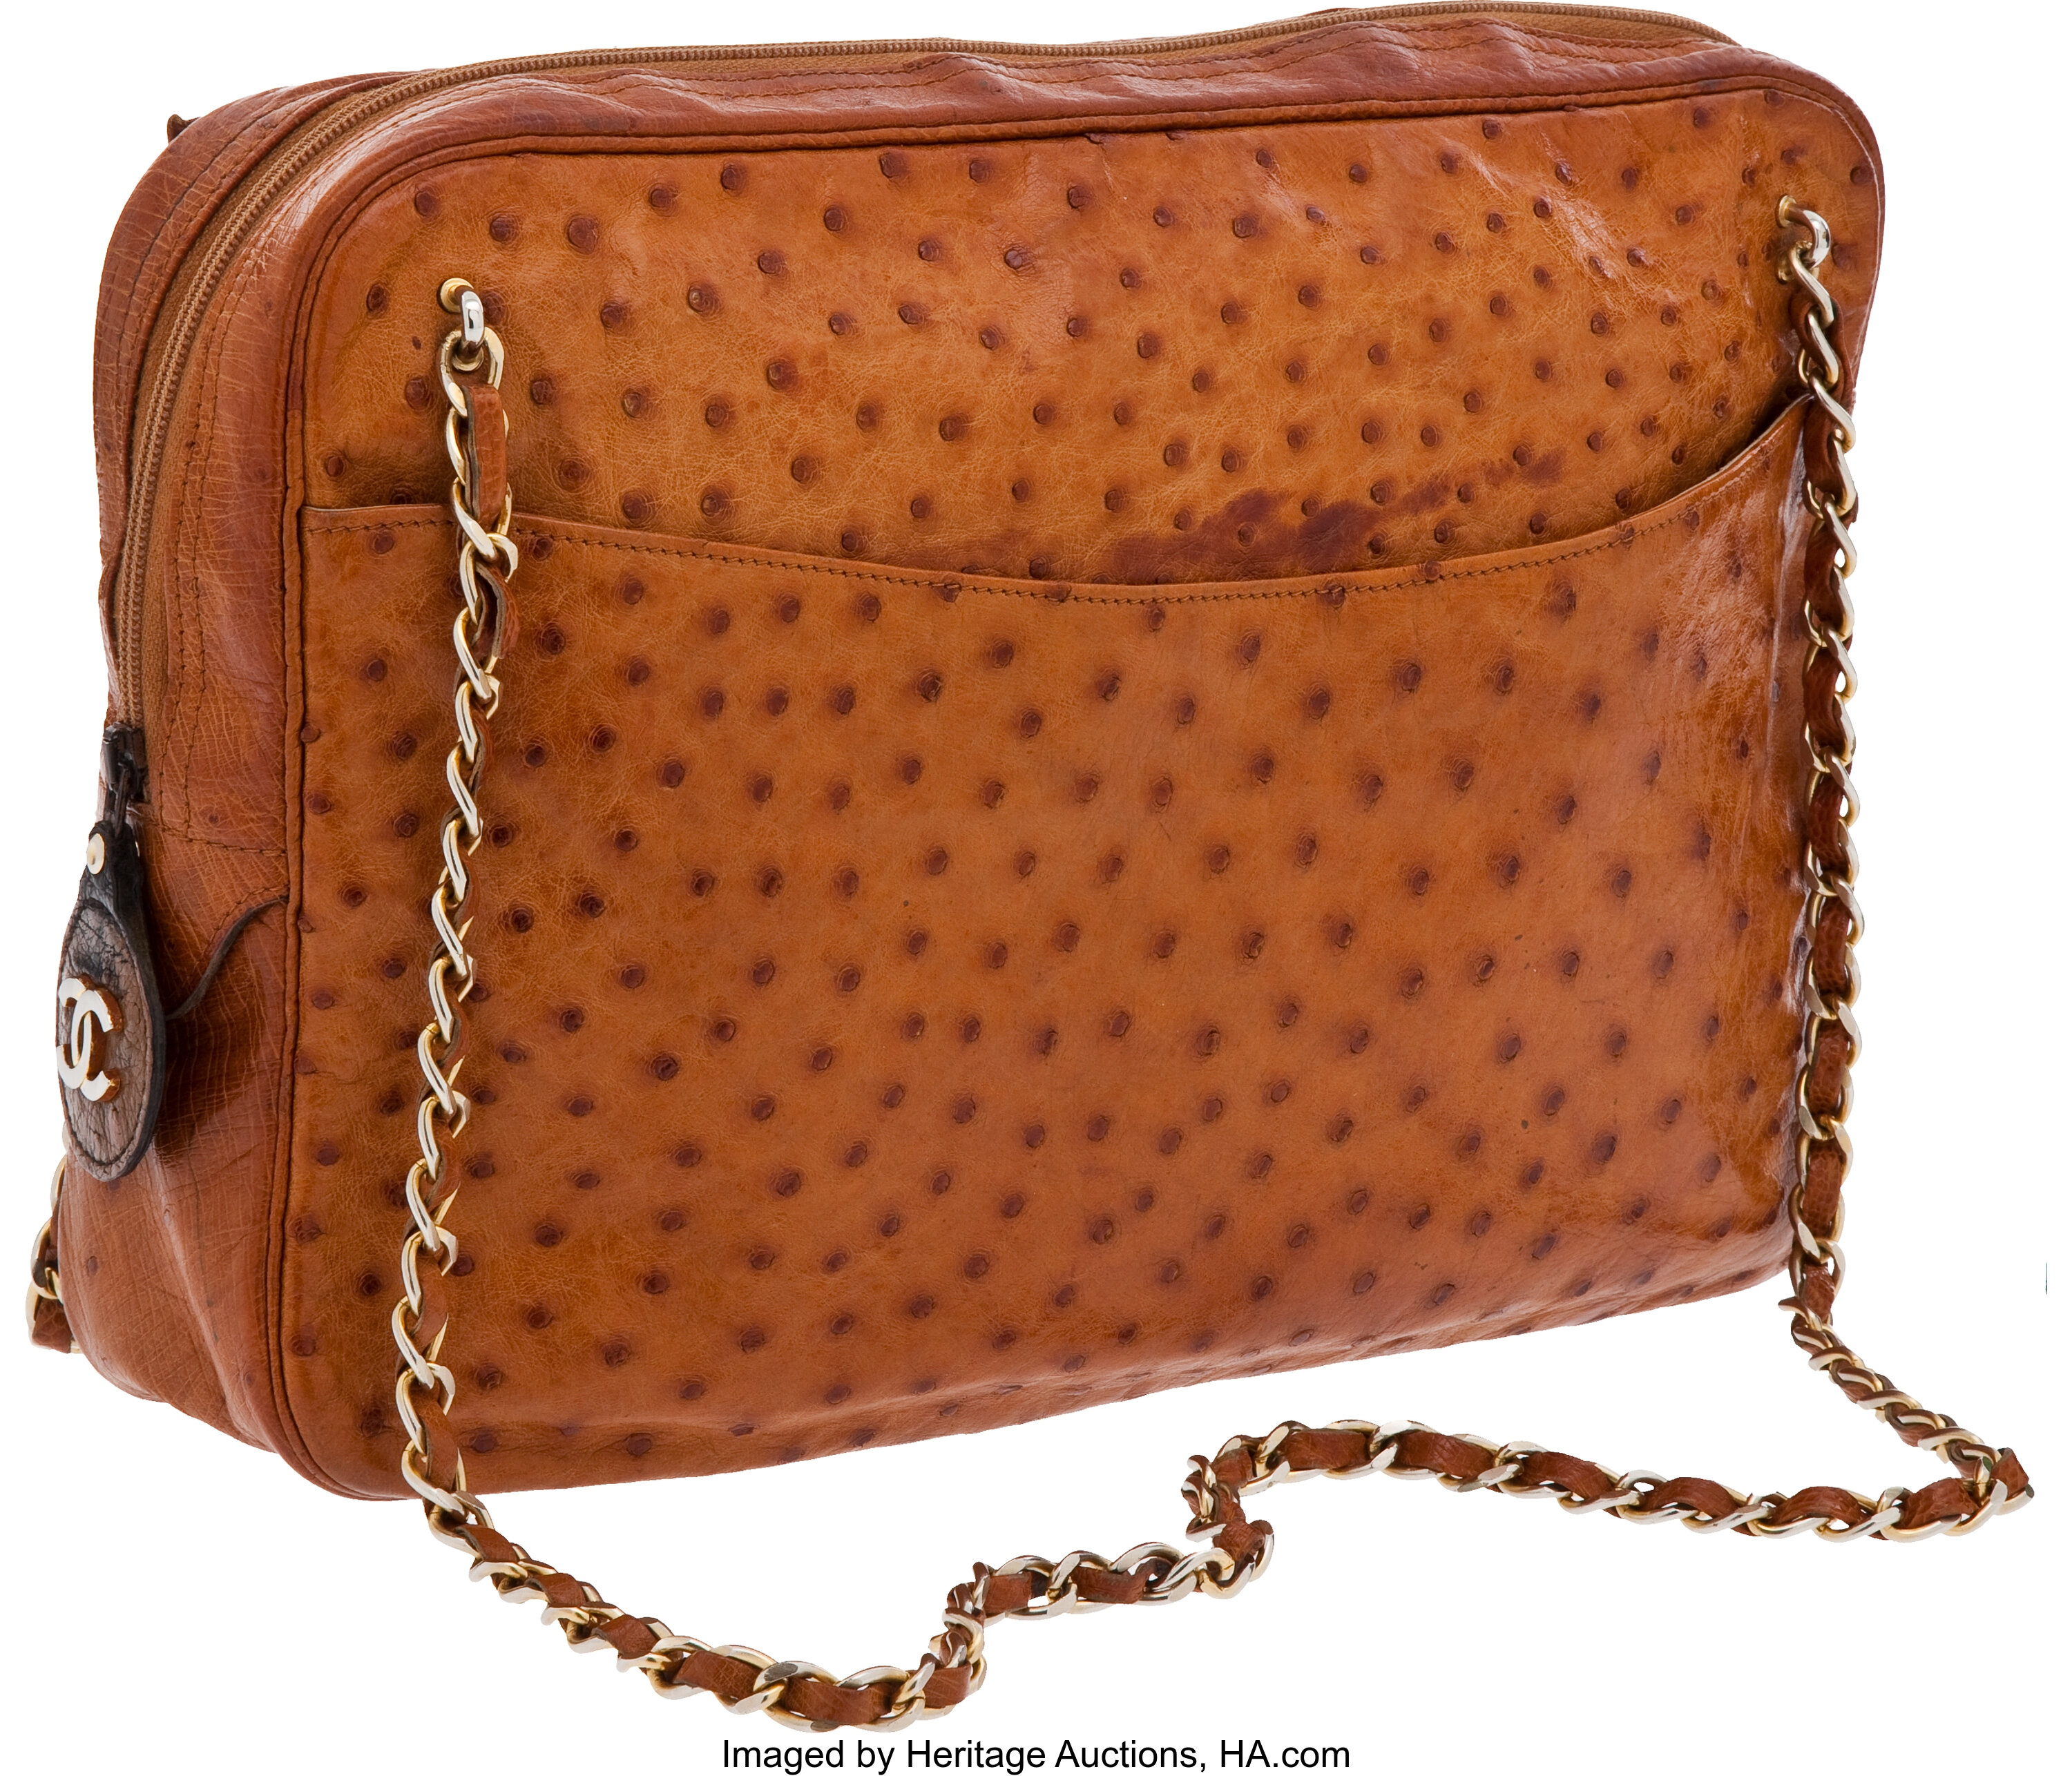 Chanel Vintage PVC Bag - Handbags - CHA278930, The RealReal